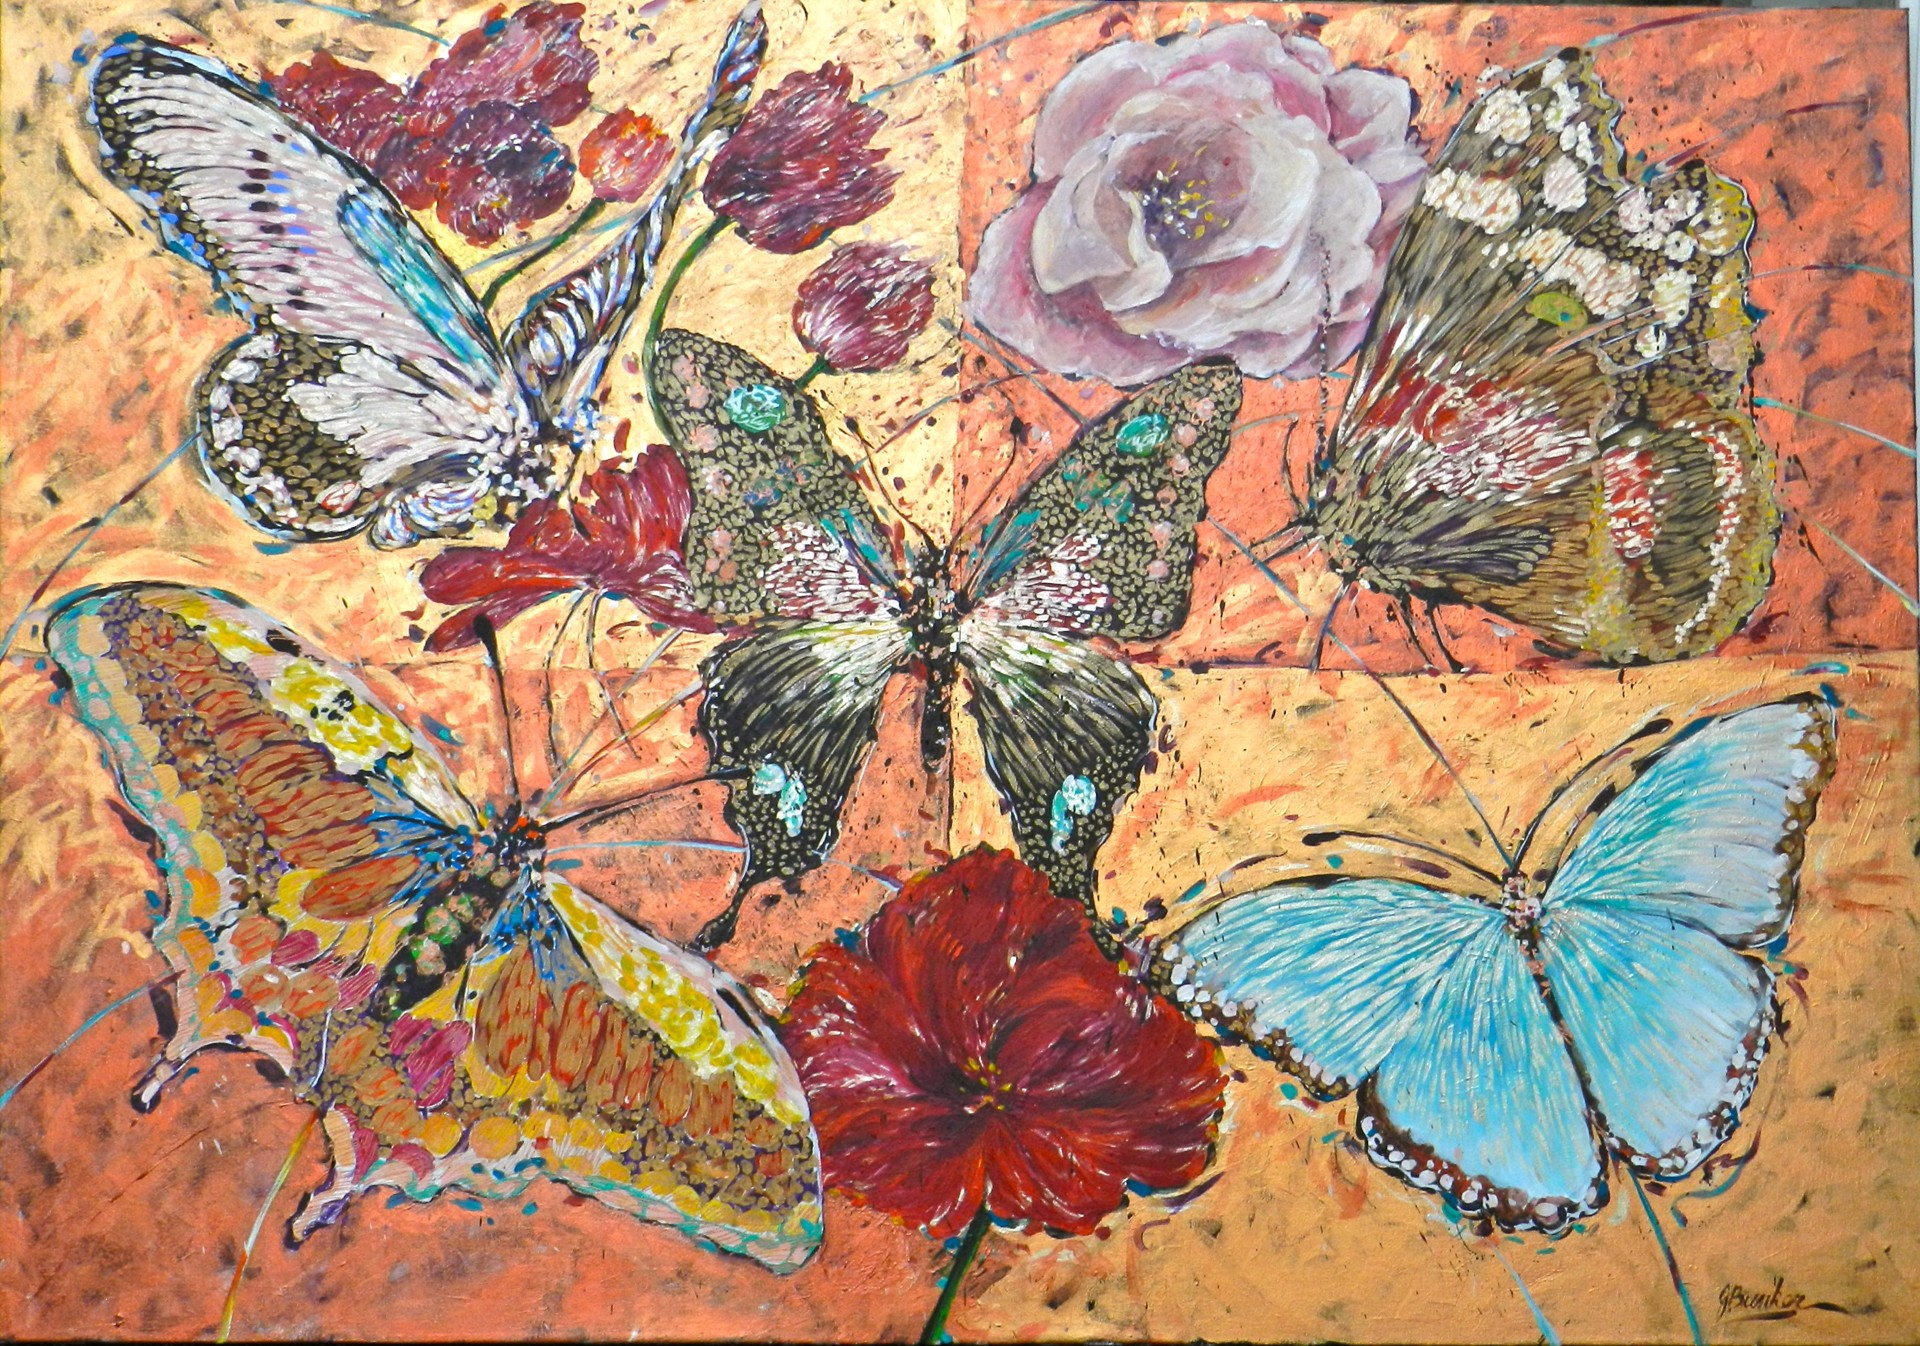 Quadrant of Butterflies by John Bunker